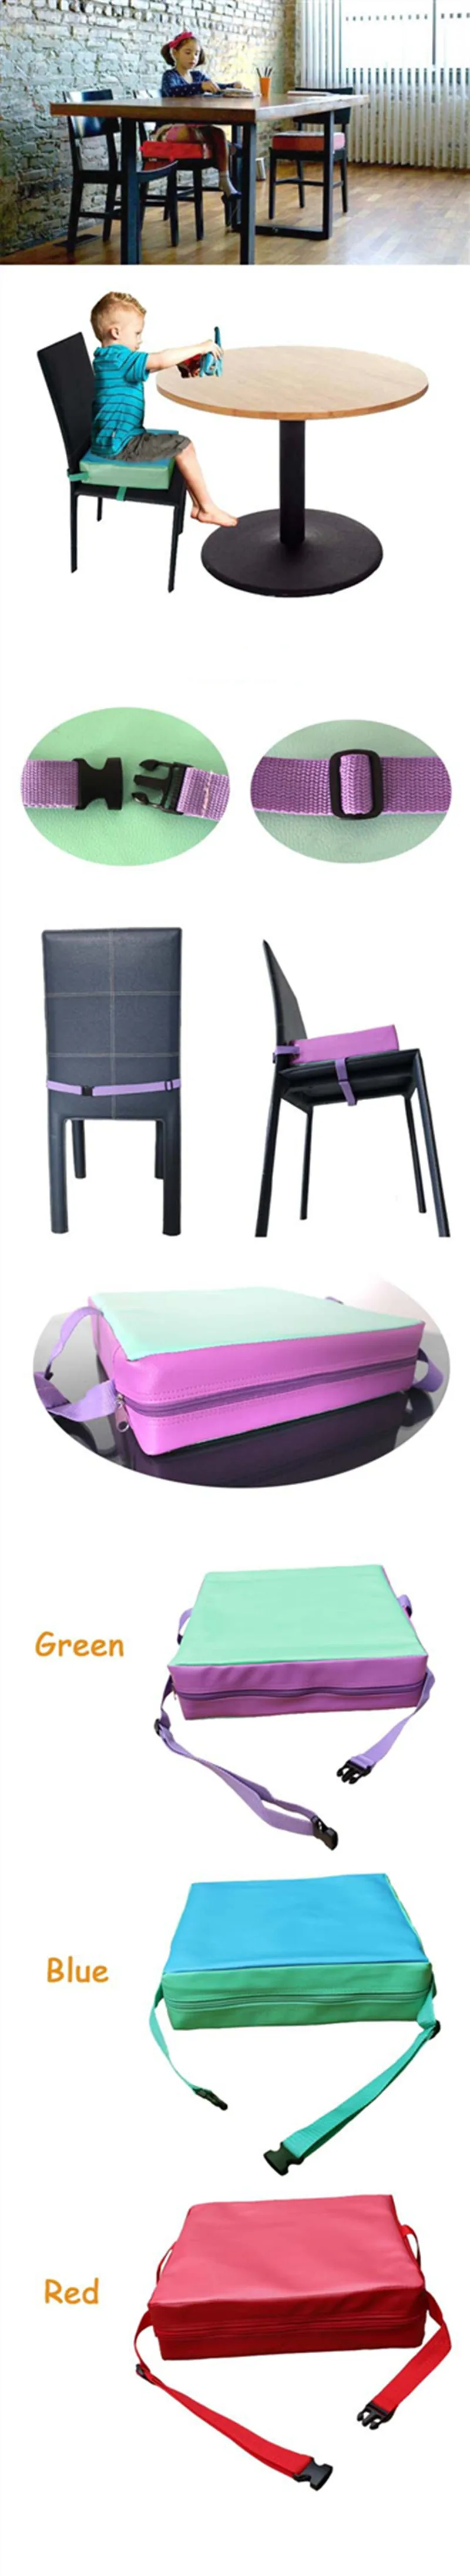 Детское обеденное кресло, увеличивающая рост, подушка для детского обеденного стула, подушка для детского стула, подушка-бустер для младенцев, съемная подушка для увеличения сиденья